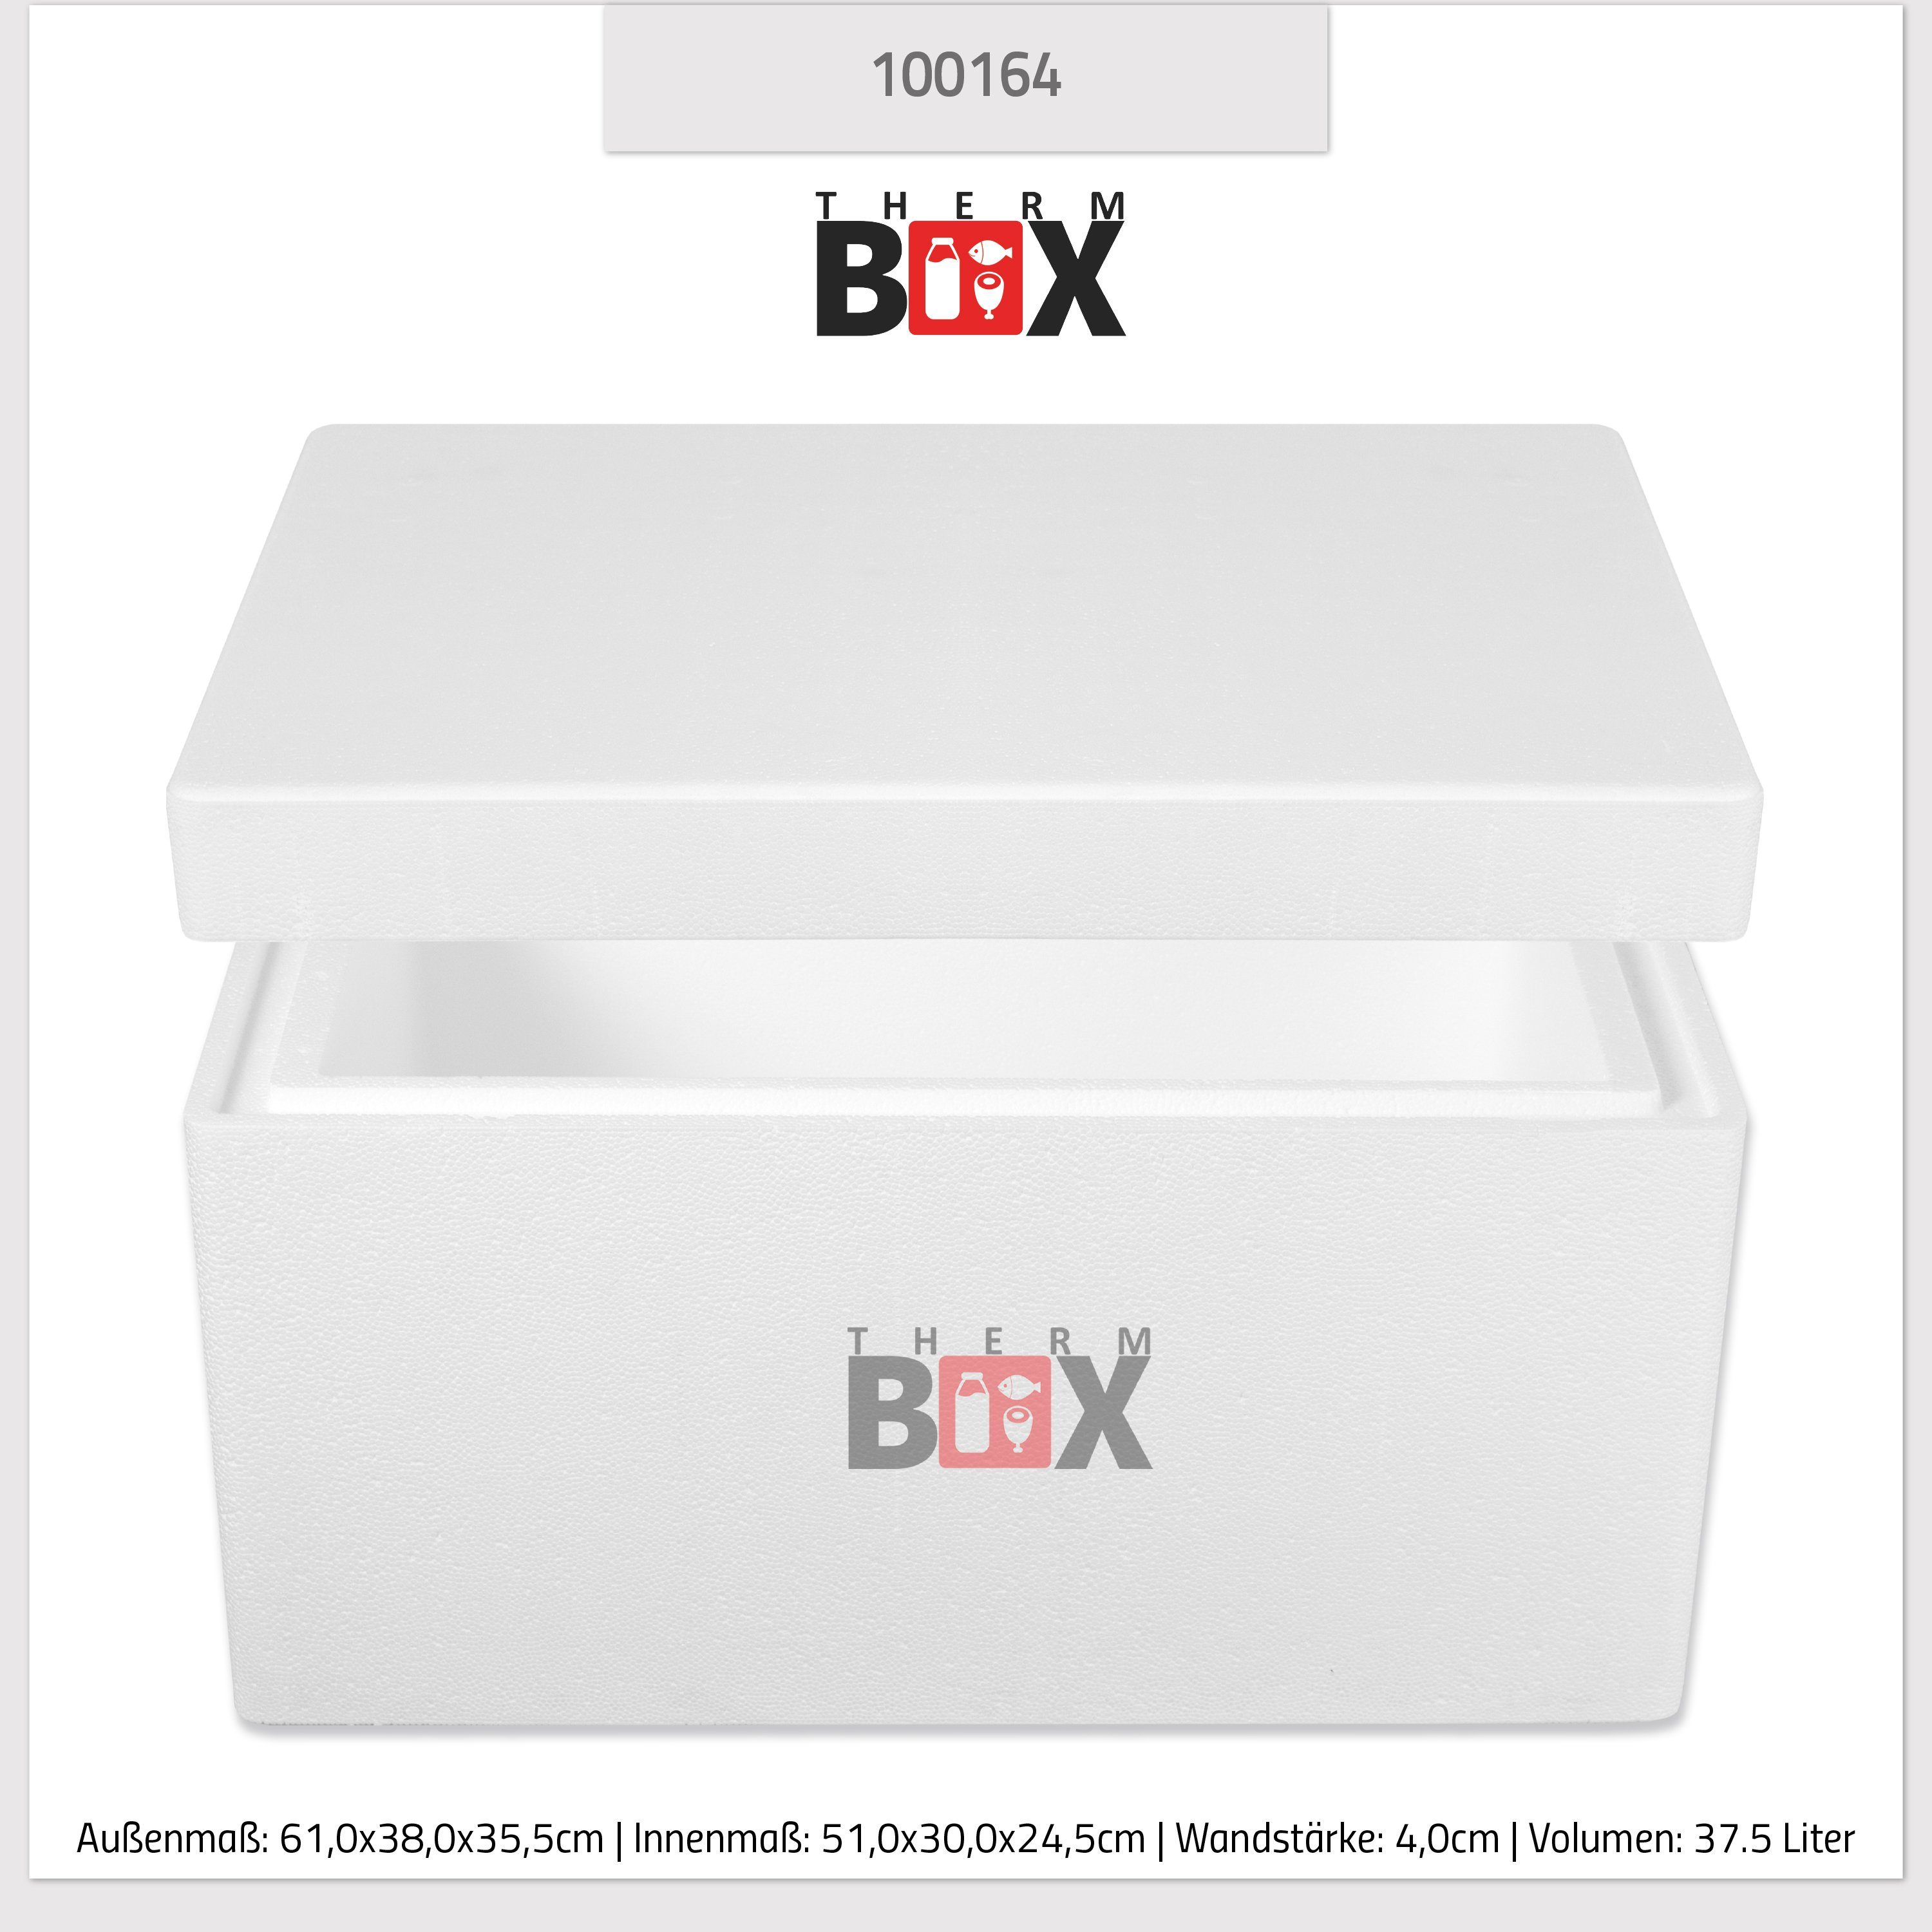 37W Wiederverwendbar Box Warmhaltebox 37,5L, 0-tlg., Thermobox Kühlbox Isolierbox THERM-BOX Styroporbox Thermobehälter Styropor-Verdichtet, 51x30x24cm Innen: Karton), (1, mit im Wand: Deckel 4cm